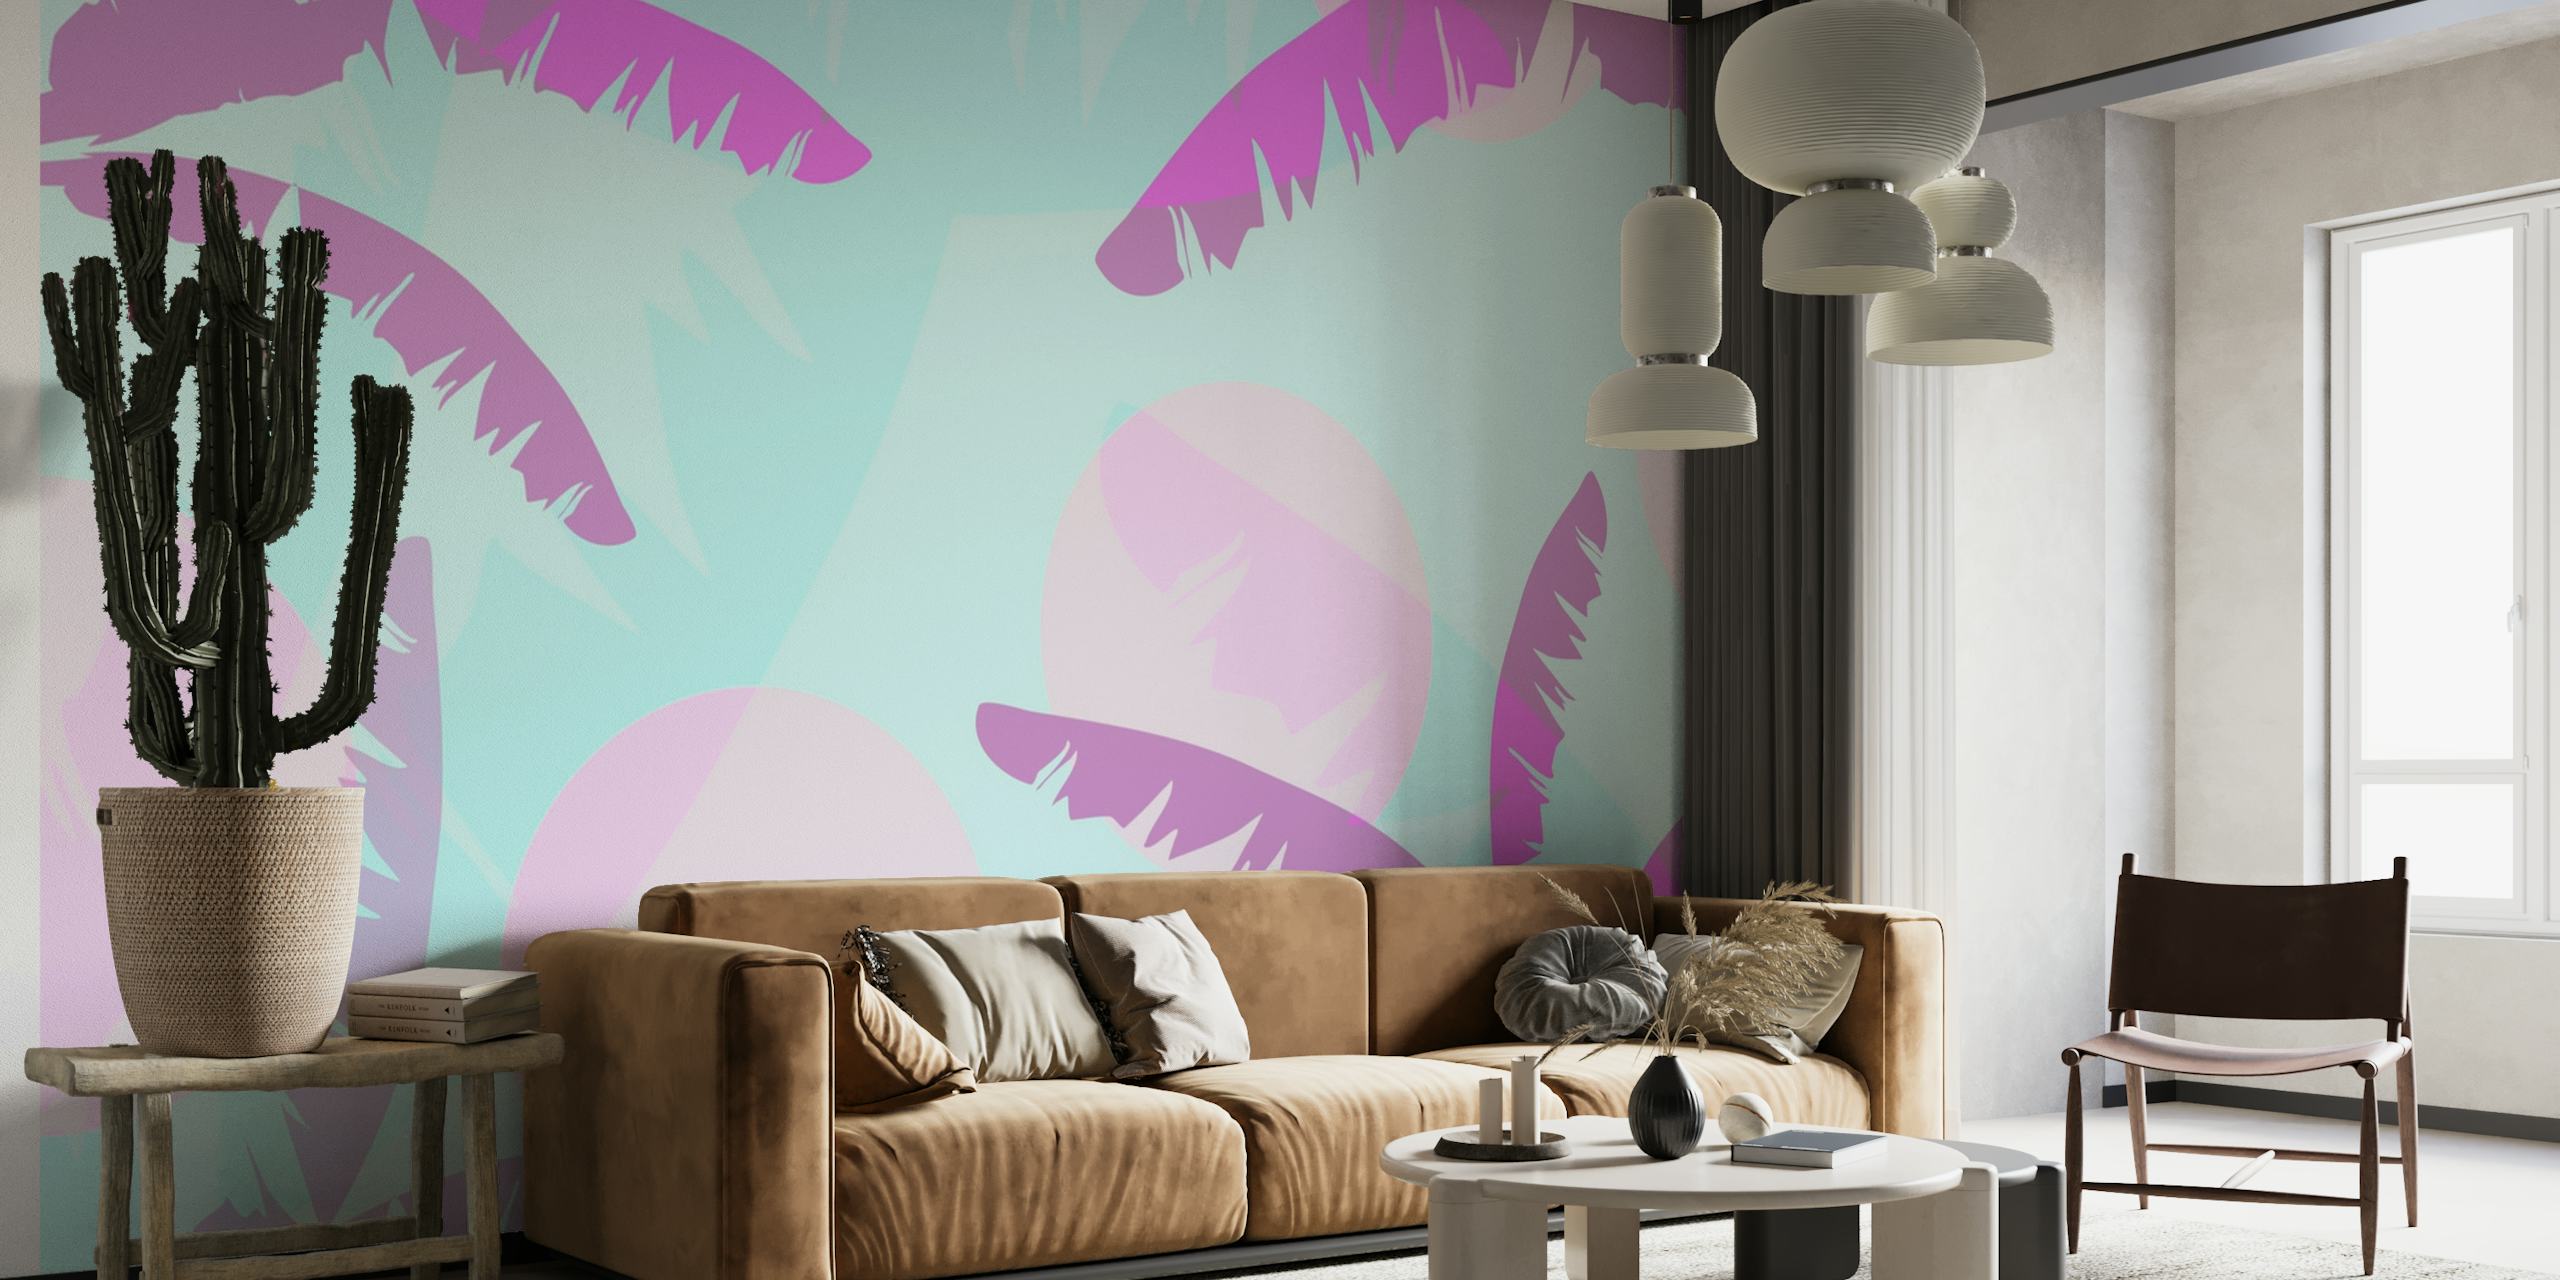 Stiliserad rosa bananblad mönster väggmålning